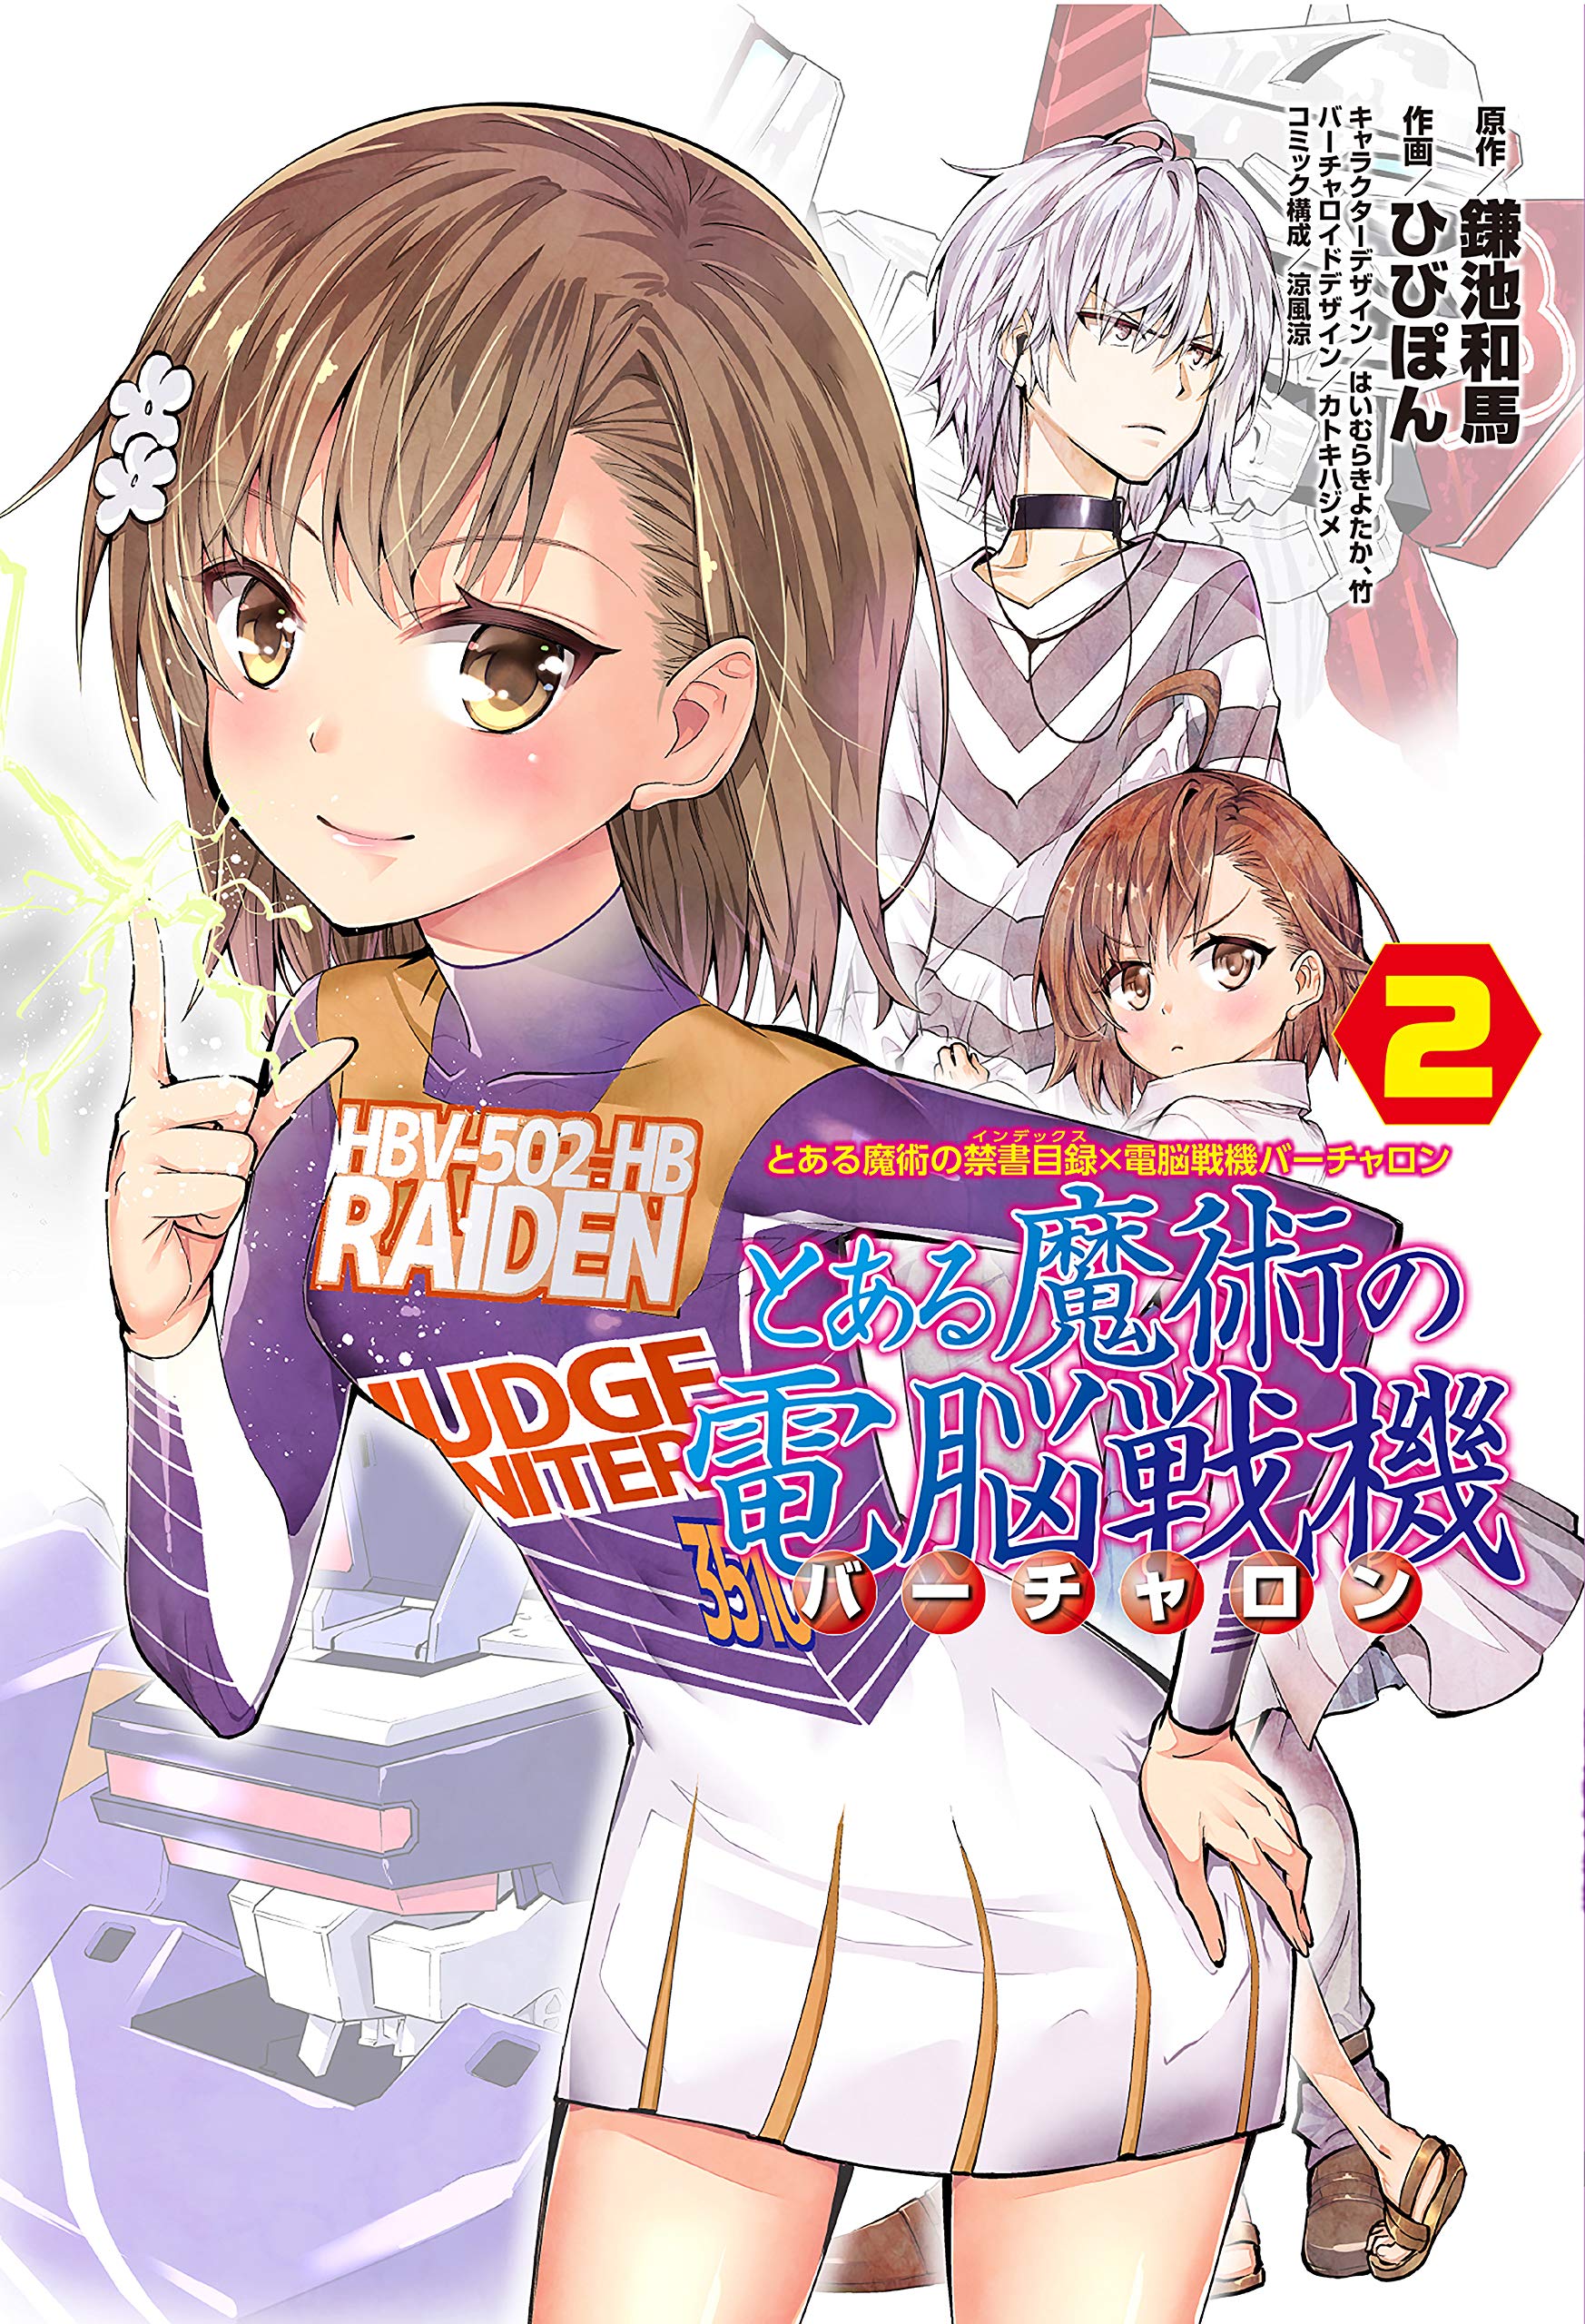 Toaru Kagaku no Accelerator Manga Volume 02, Toaru Majutsu no Index Wiki